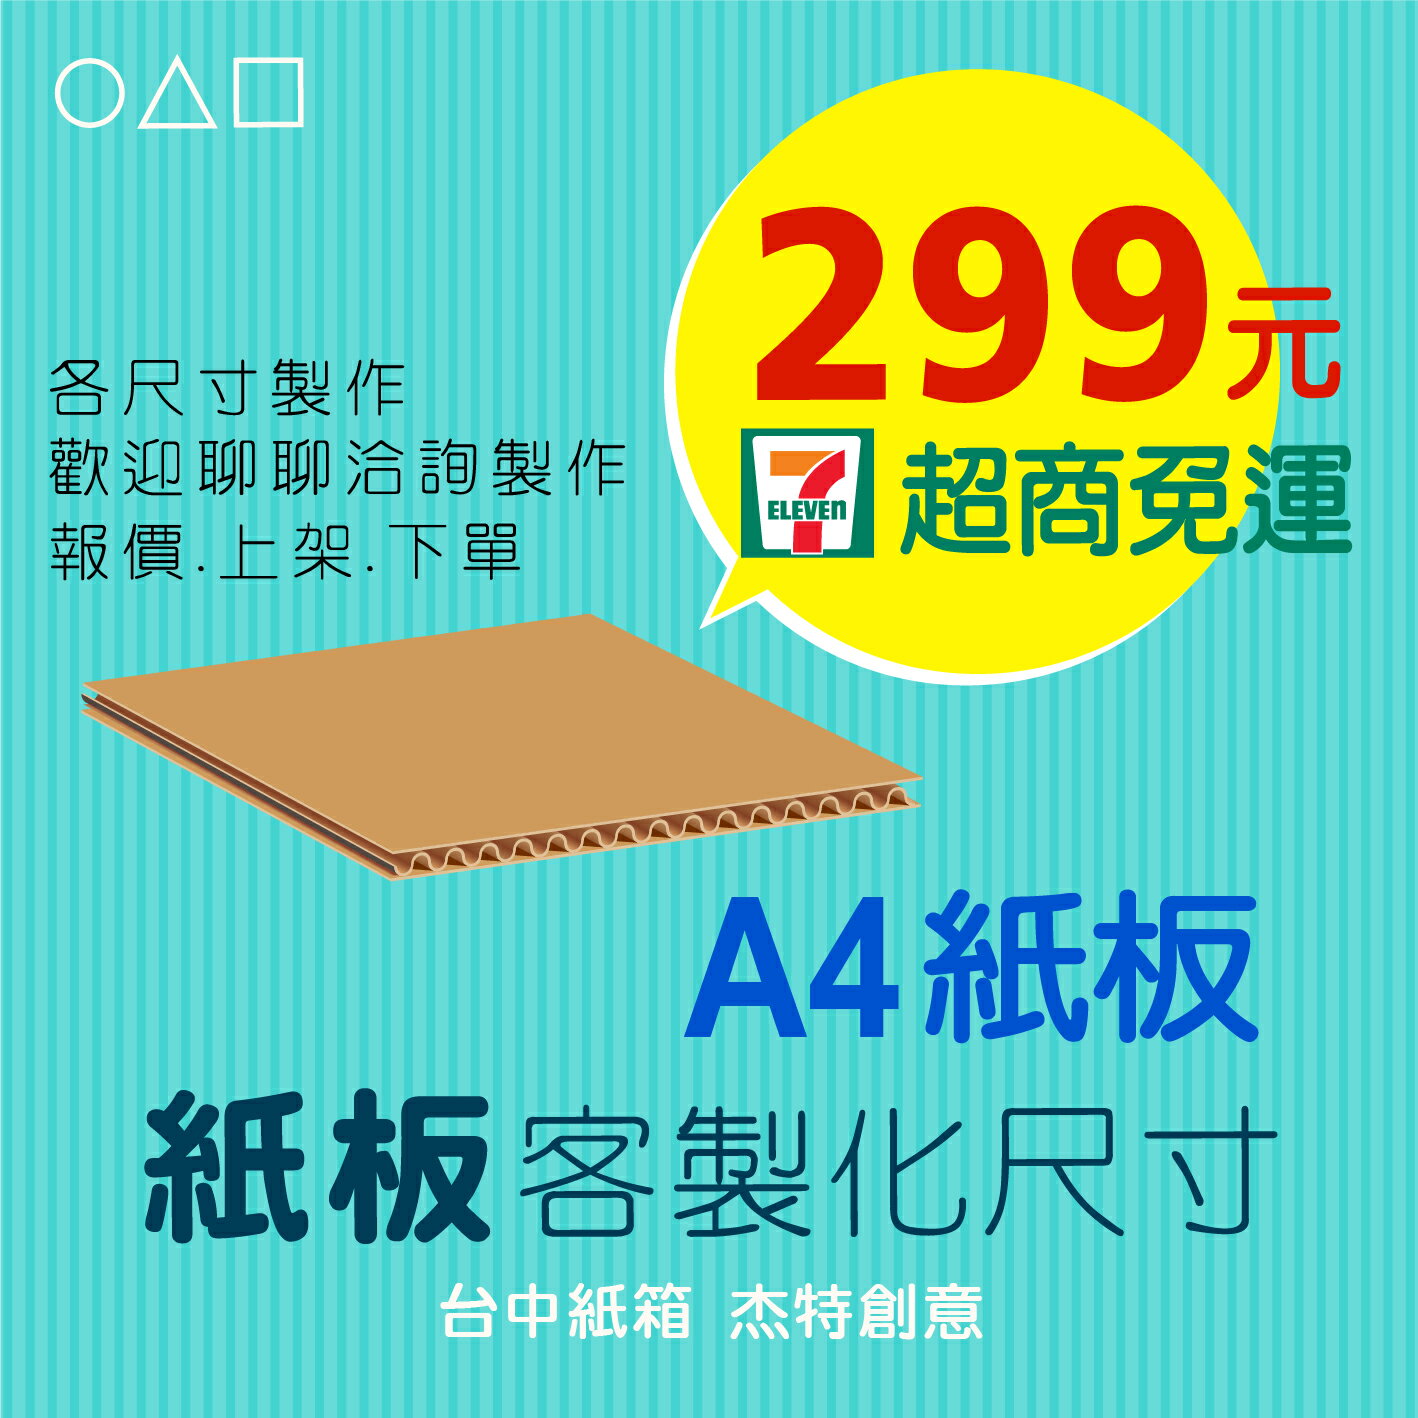 A4紙板、紙板多尺寸選擇、紙板、紙箱、包裝紙版、訂製、訂做、瓦楞紙板、隔板、台中紙箱